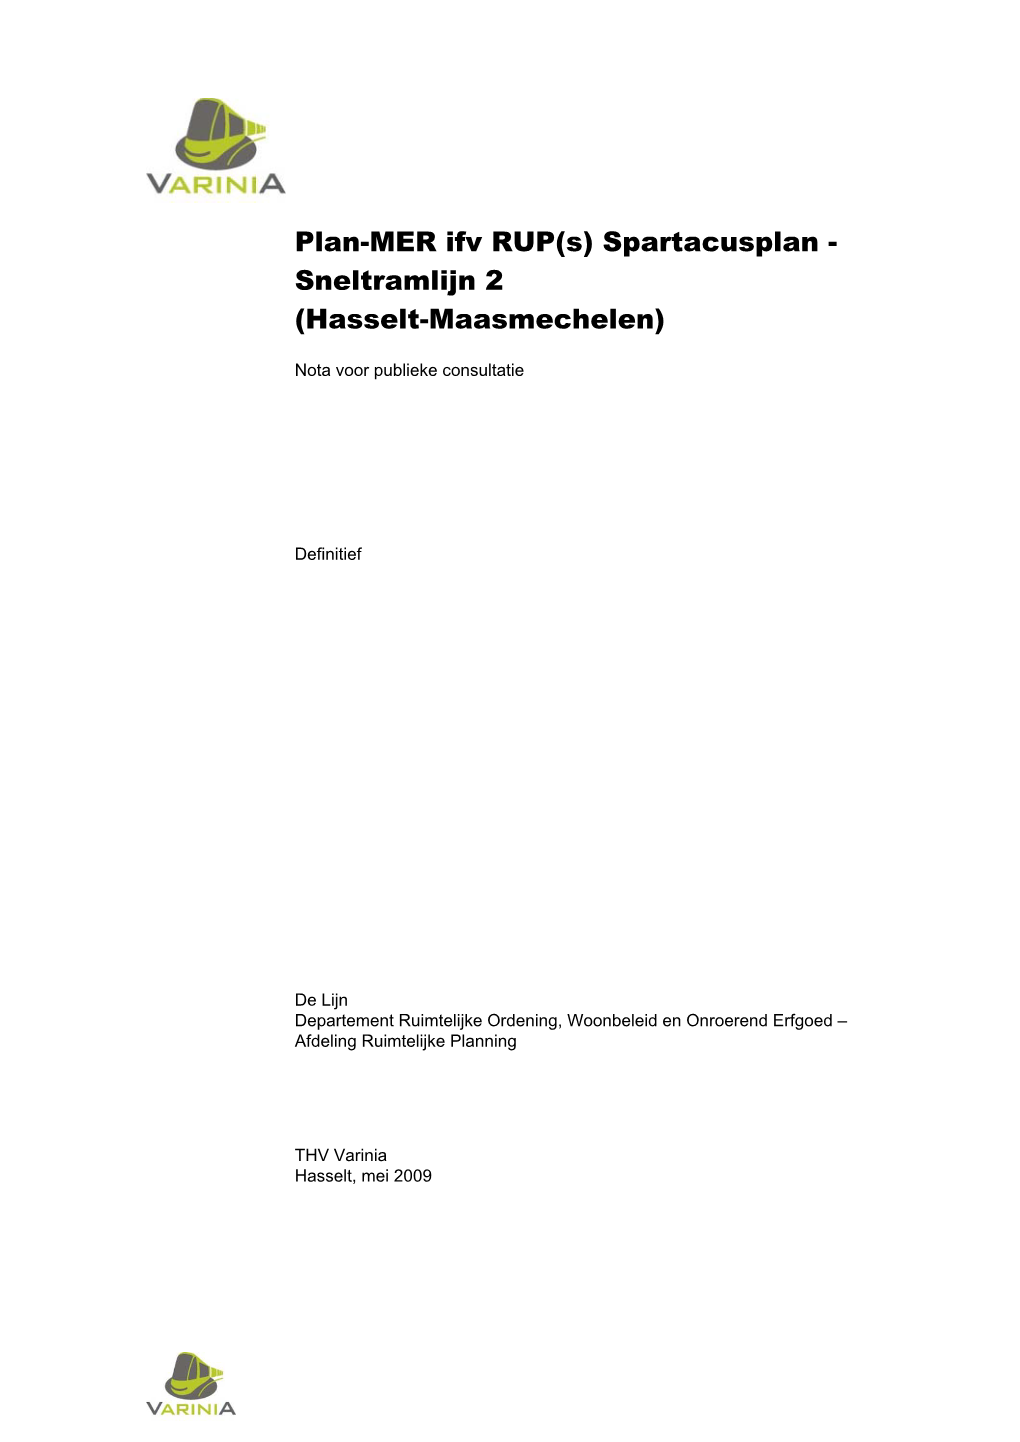 Plan-MER Ifv RUP(S) Spartacusplan - Sneltramlijn 2 (Hasselt-Maasmechelen)